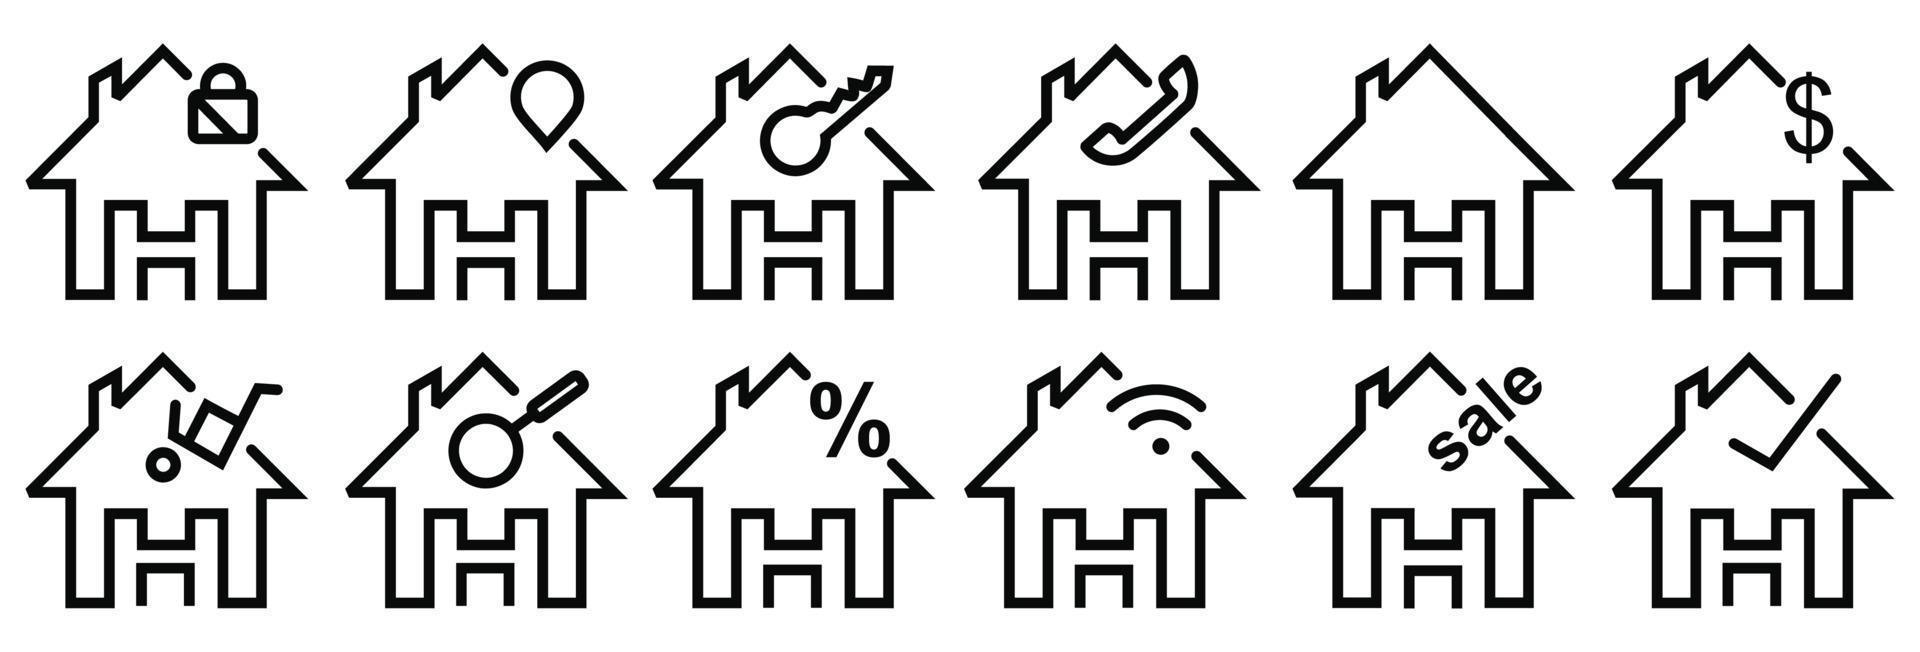 set di icone immobiliari, segni di raccolta isolati vettoriali per la casa.